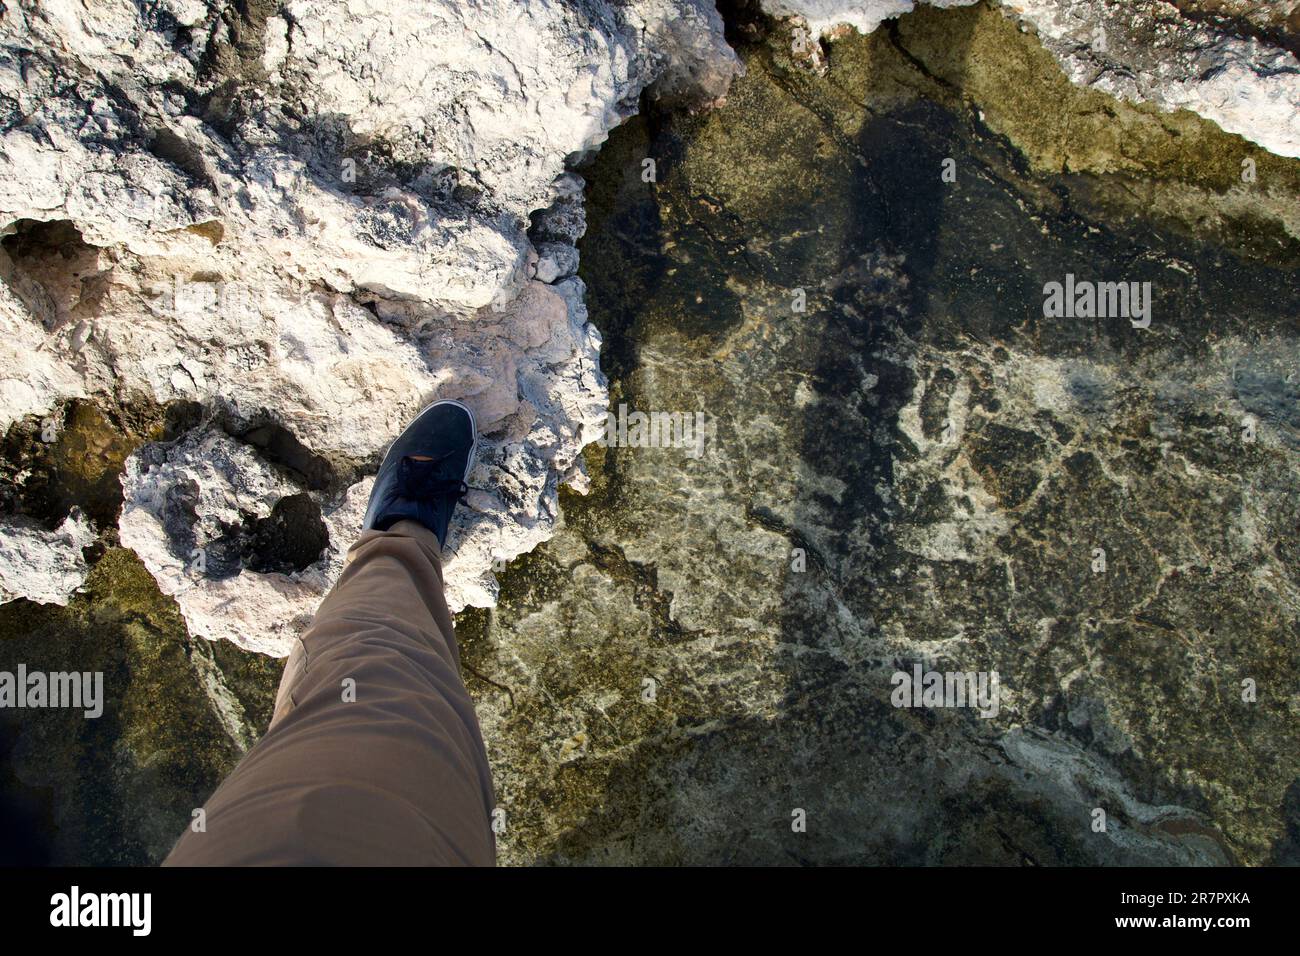 MELLIEHA, MALTA - 01 GENNAIO 2020: Un piede dell'uomo attraversa una piccola piscina rocciosa con acqua salata su una costa rocciosa di Malta vicino alla Laguna dei Coralli Foto Stock